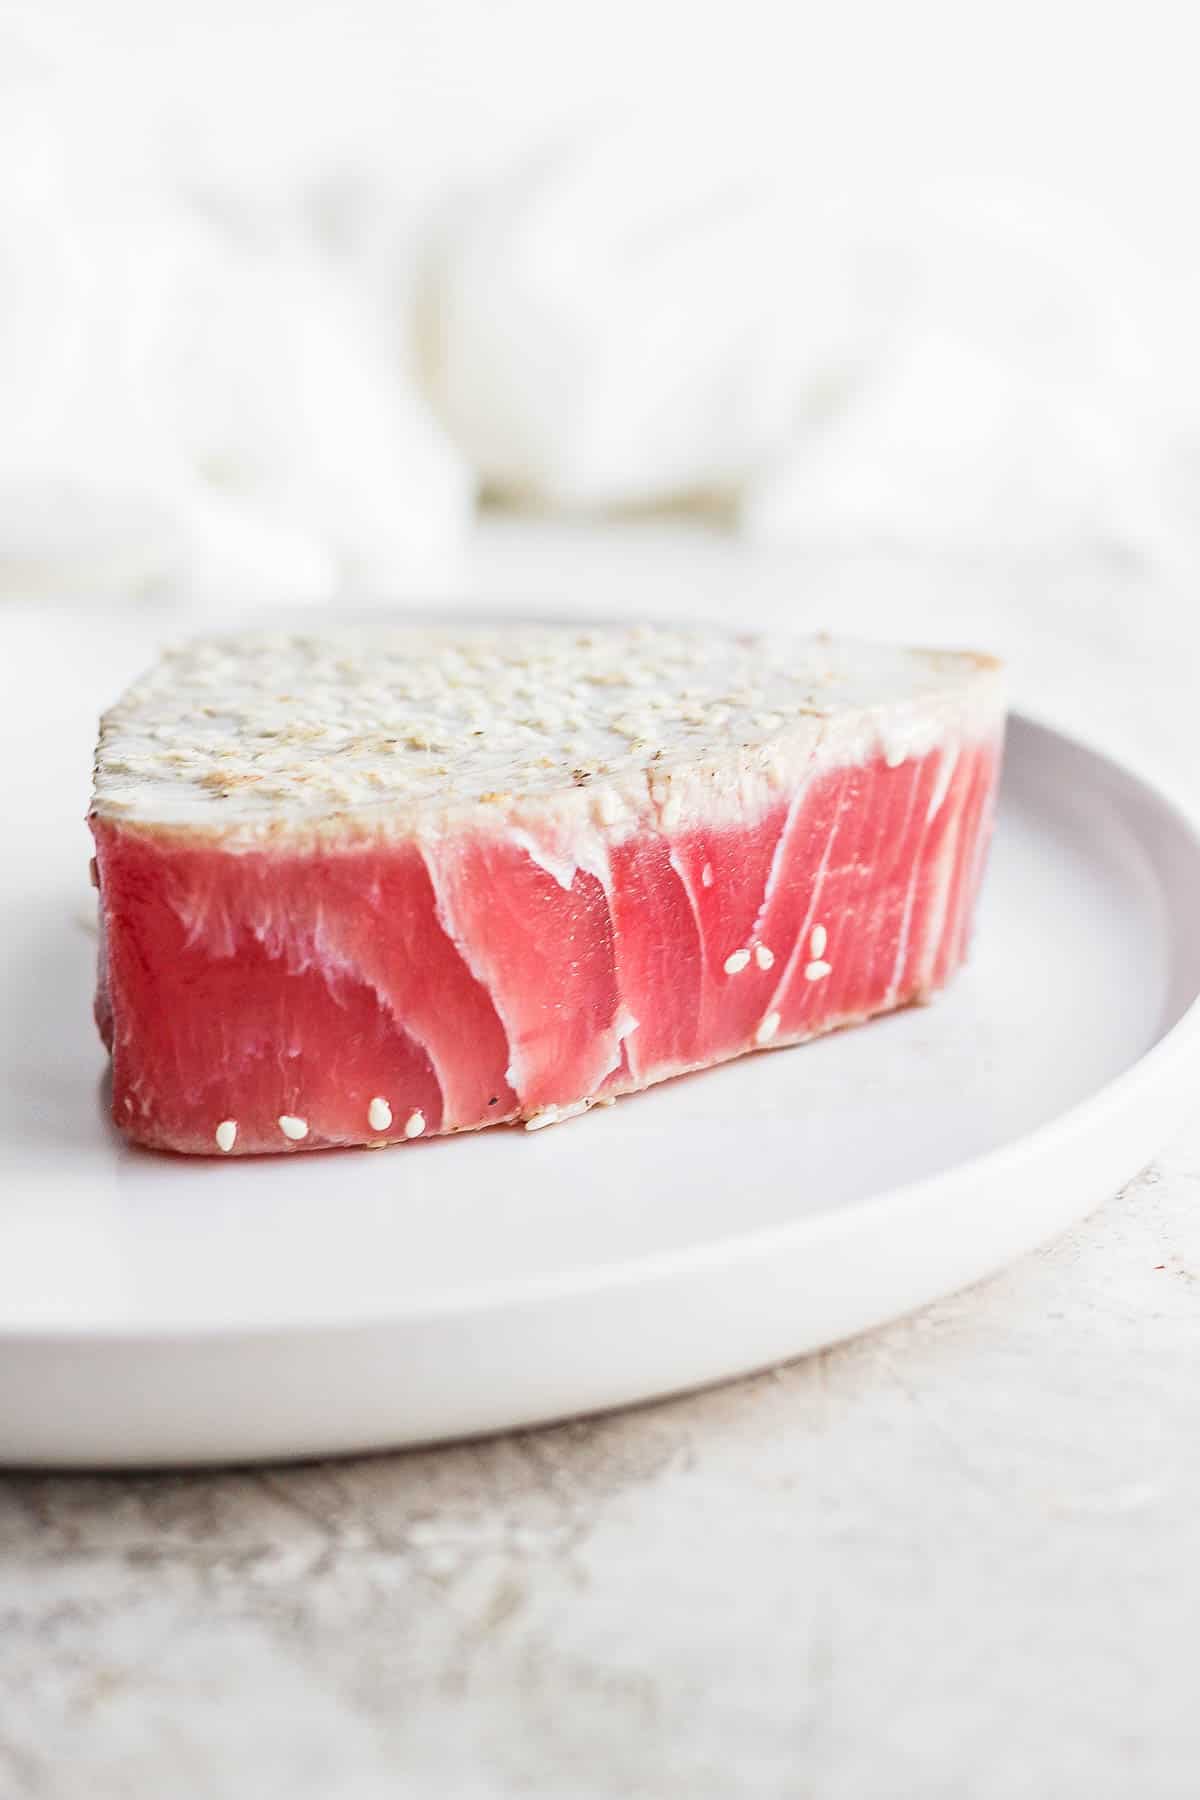 A piece of seared ahi tuna on a plate. 